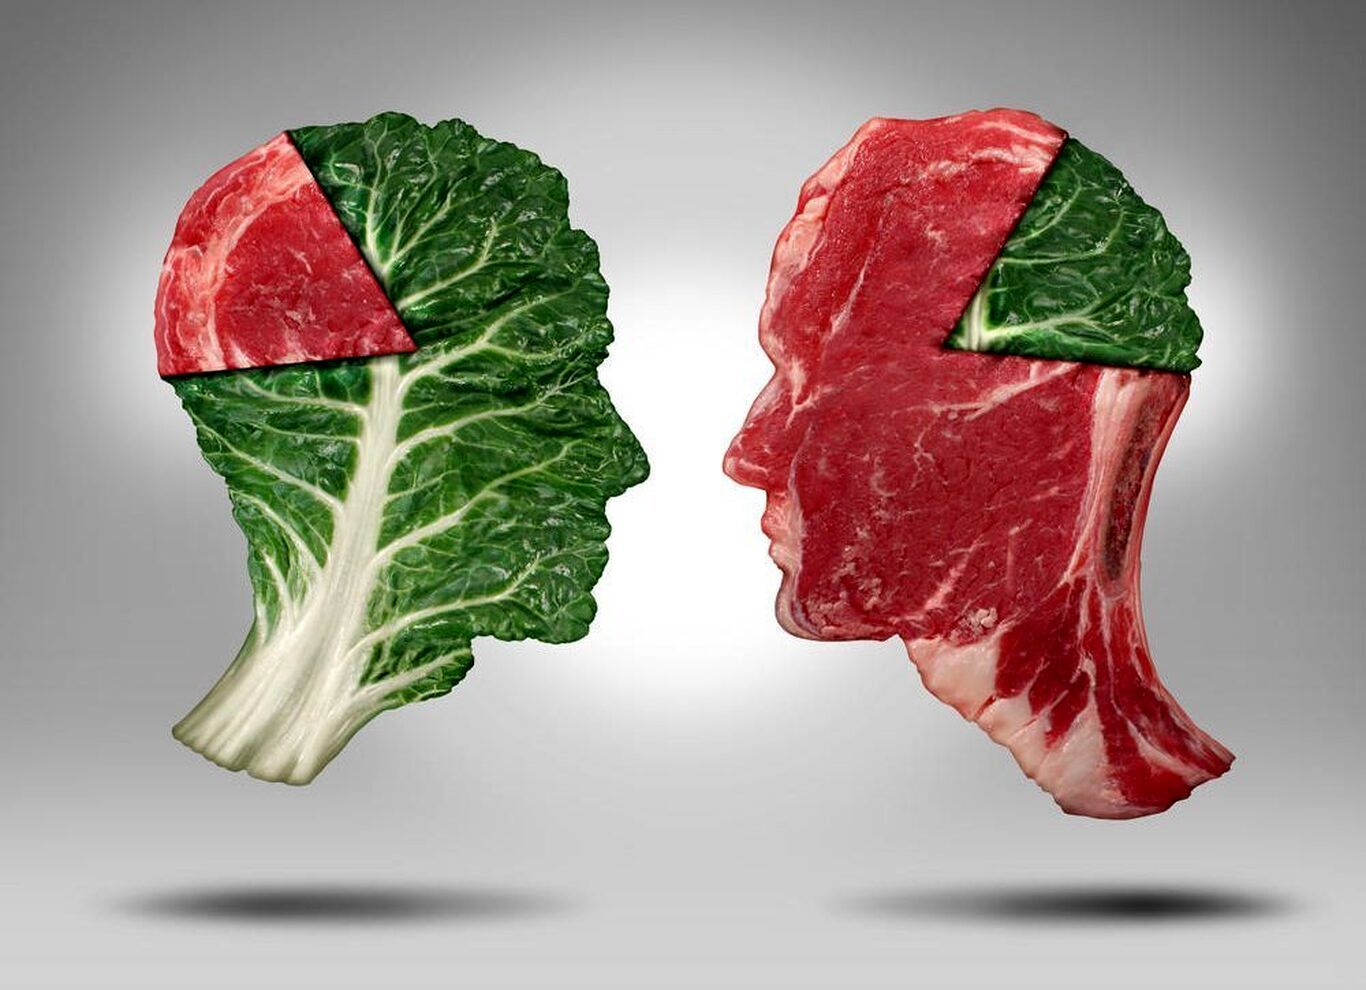 پروتئین گیاهی مفیدتر است یا حیوانی؟